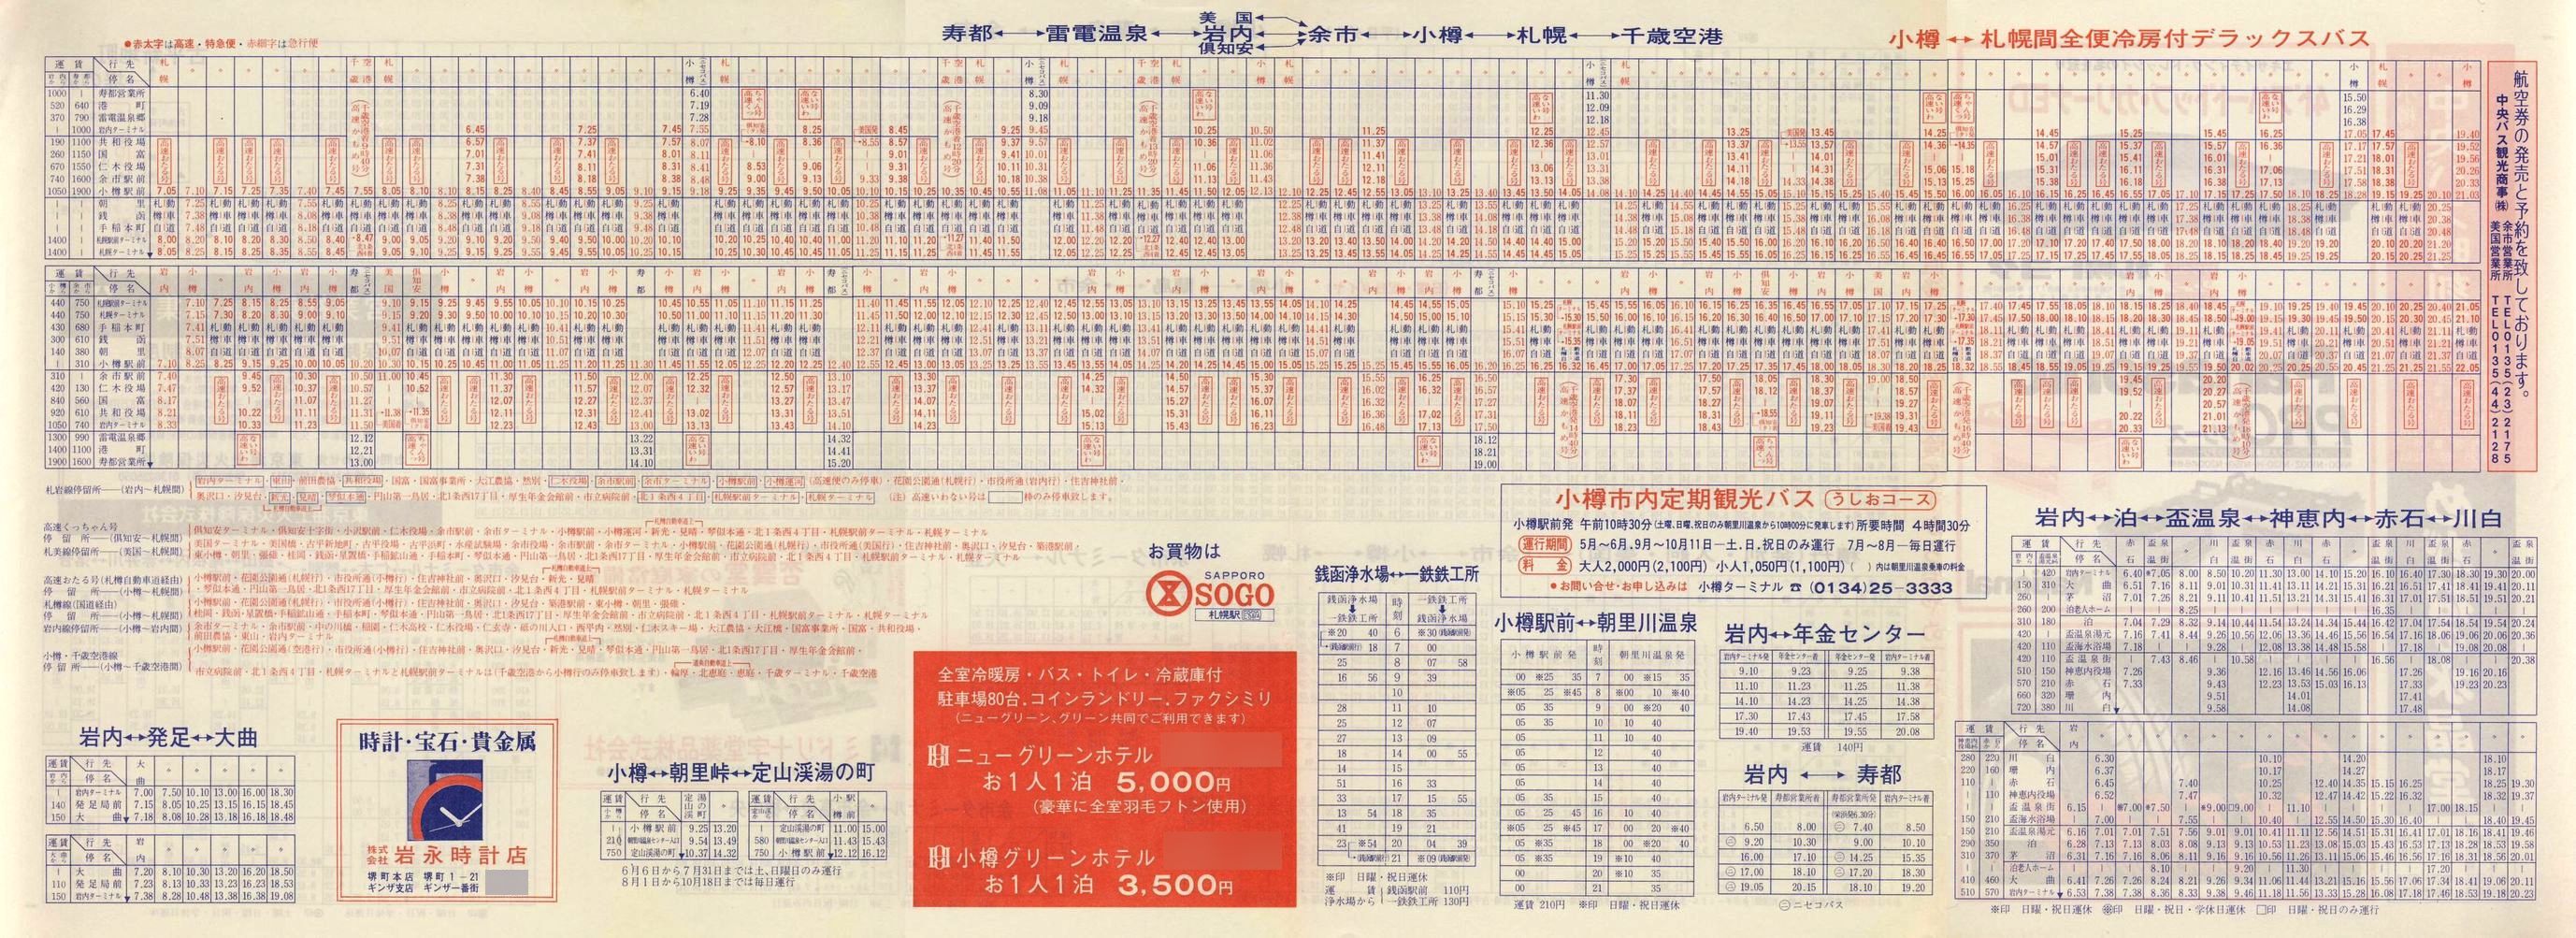 1987-03-21改正_北海道中央バス(小樽)_小樽事業部管内郊外線時刻表裏面